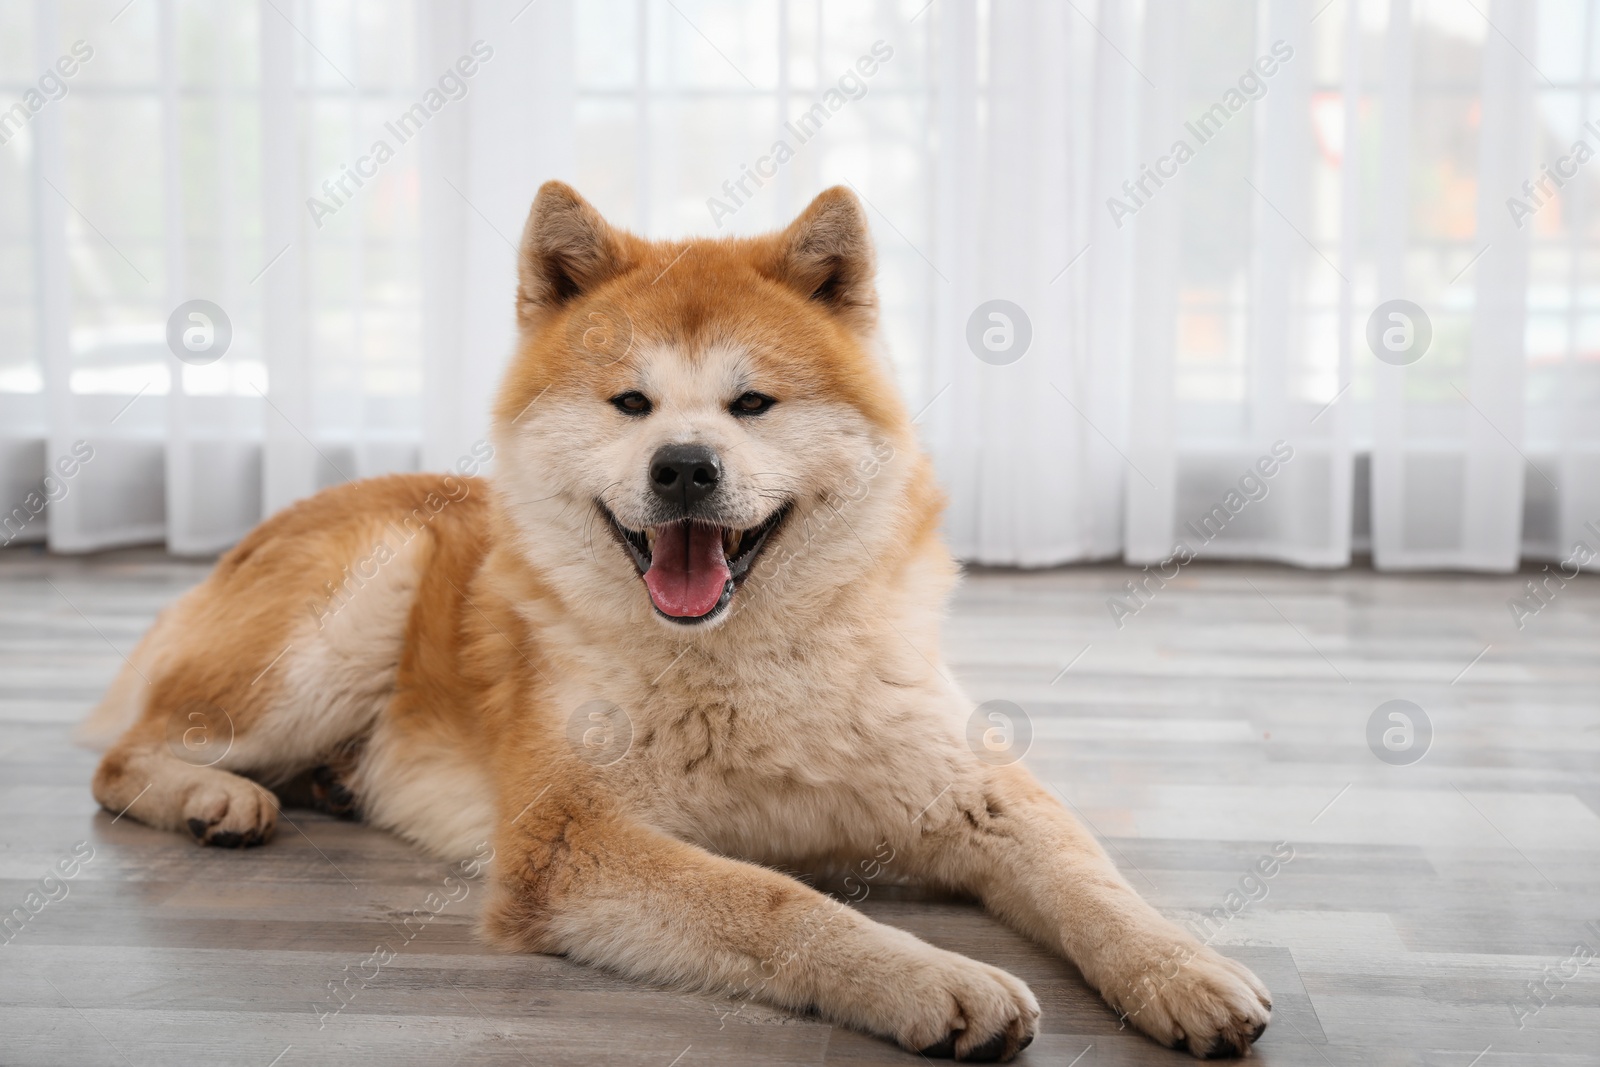 Photo of Cute Akita Inu dog on floor near window indoors